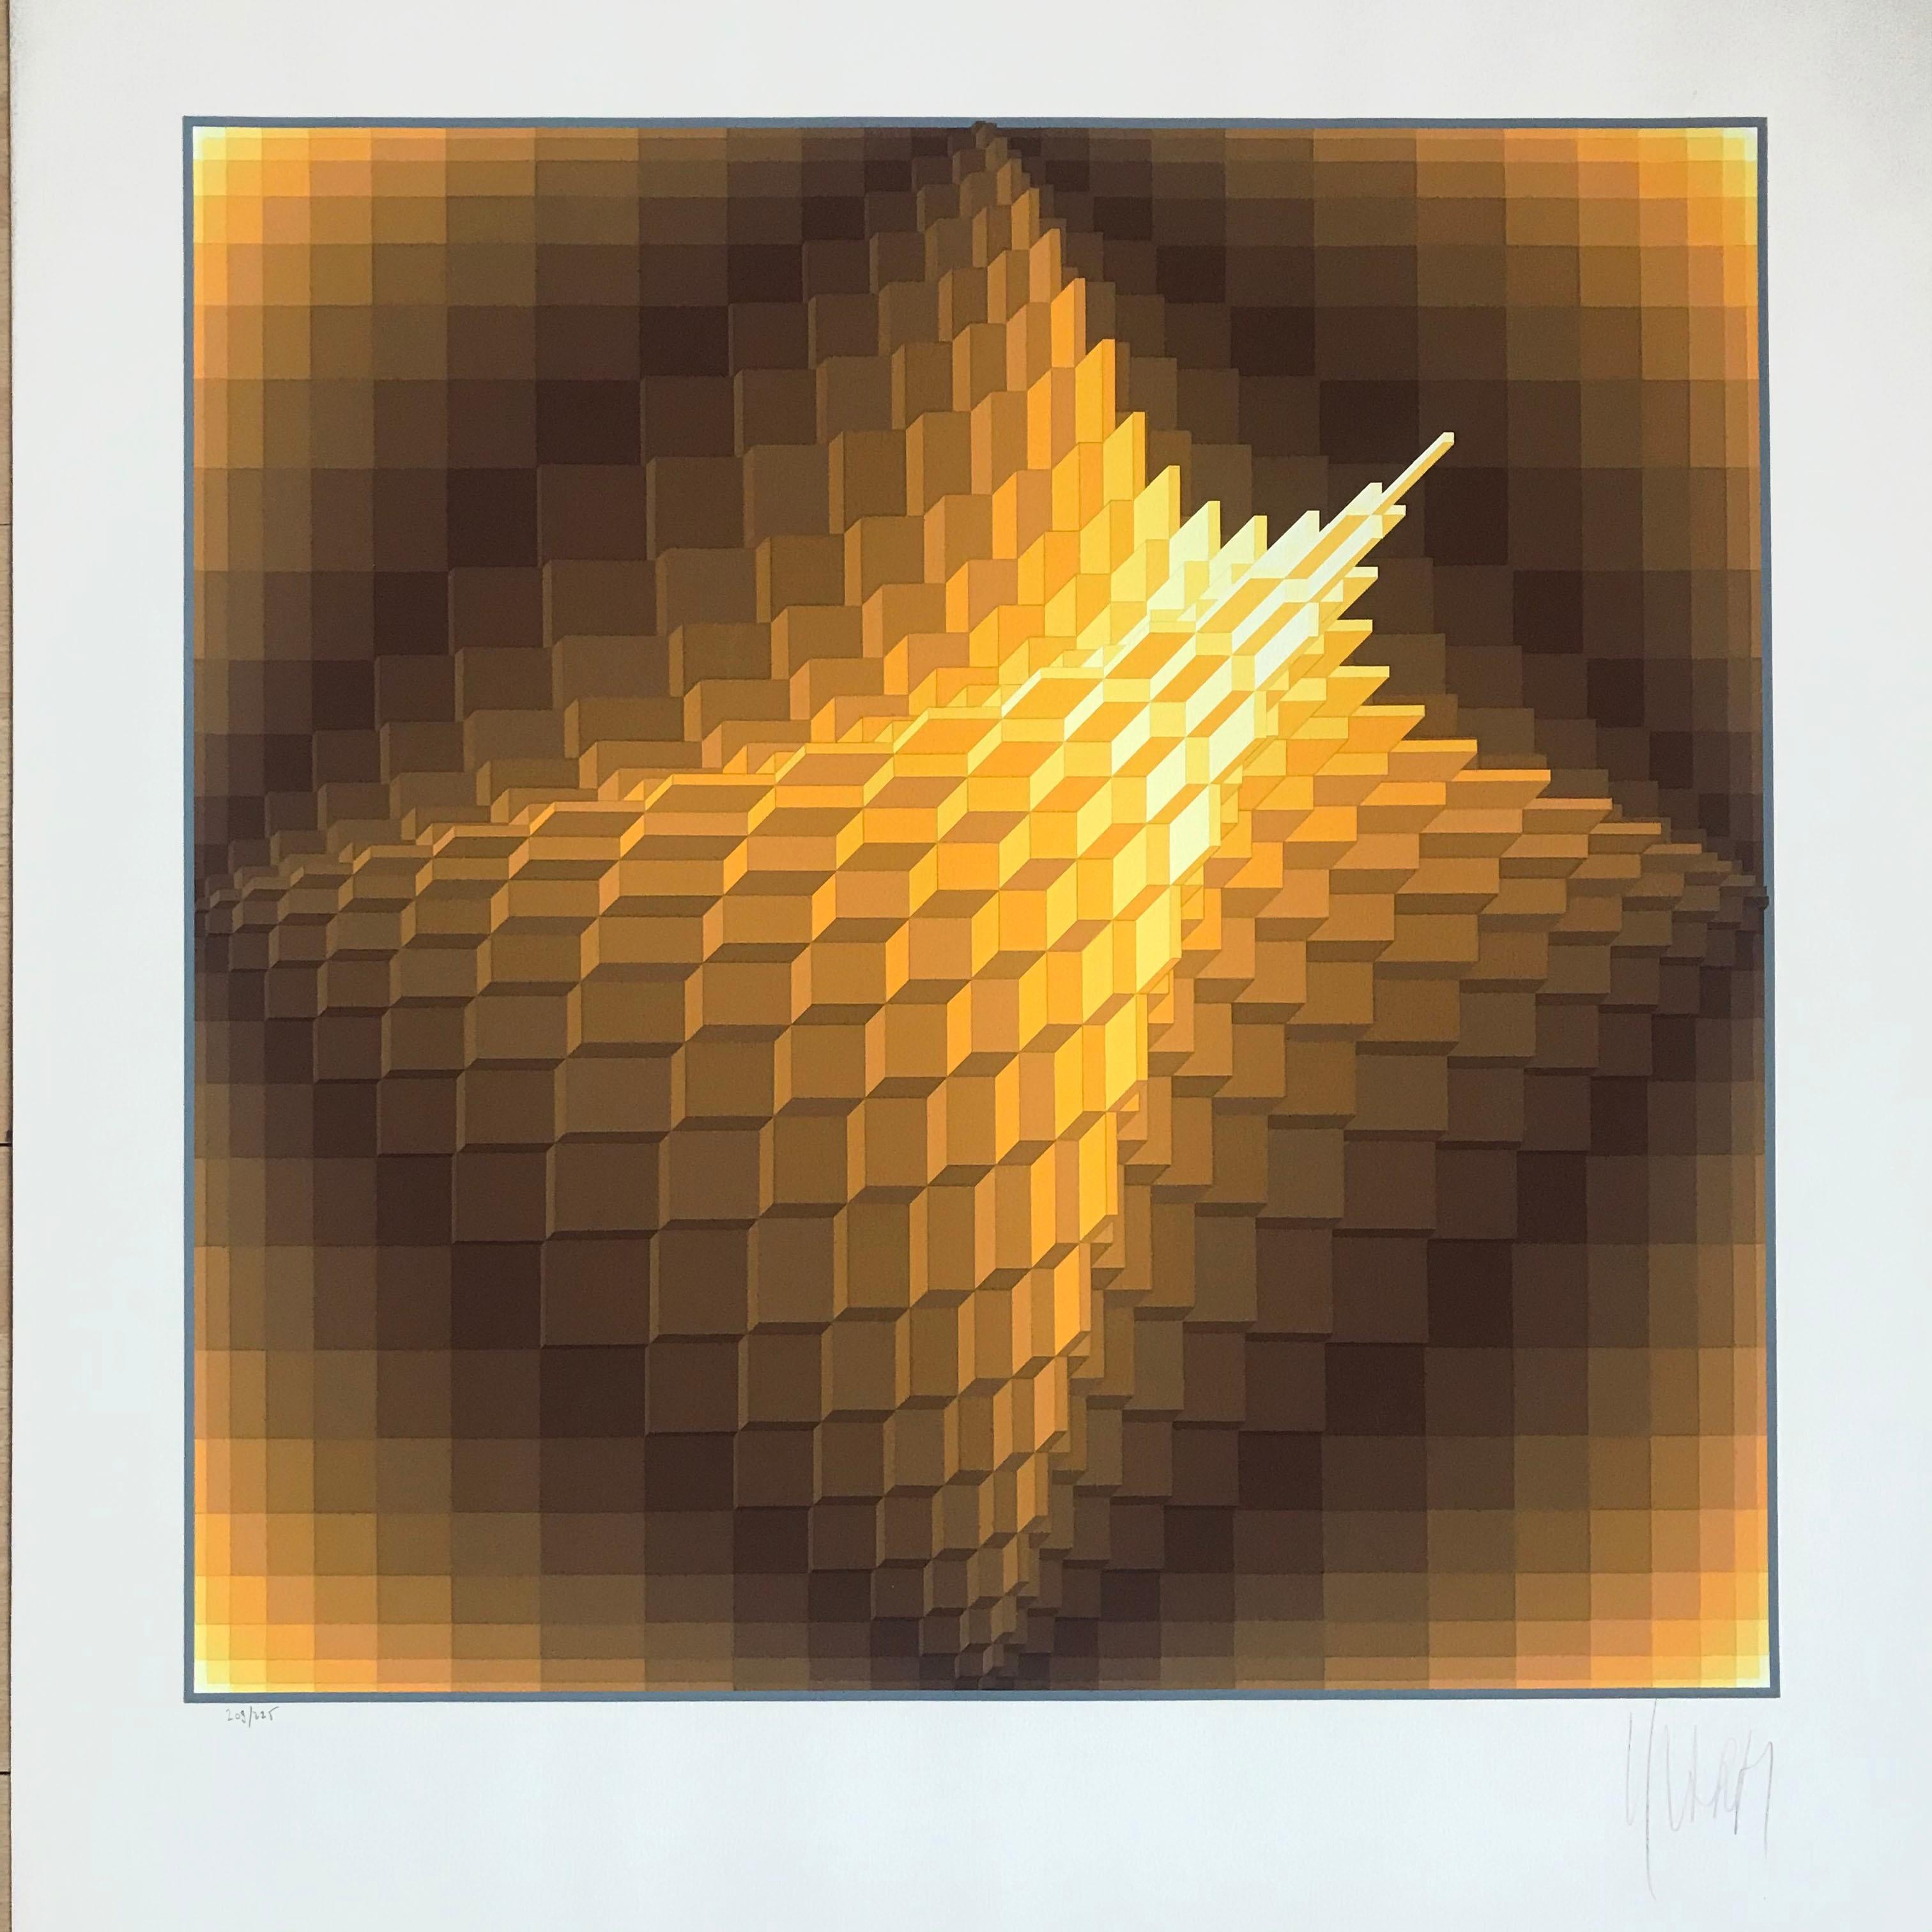 Yvaral Lithographie "Structure géométrique 1" 1974.